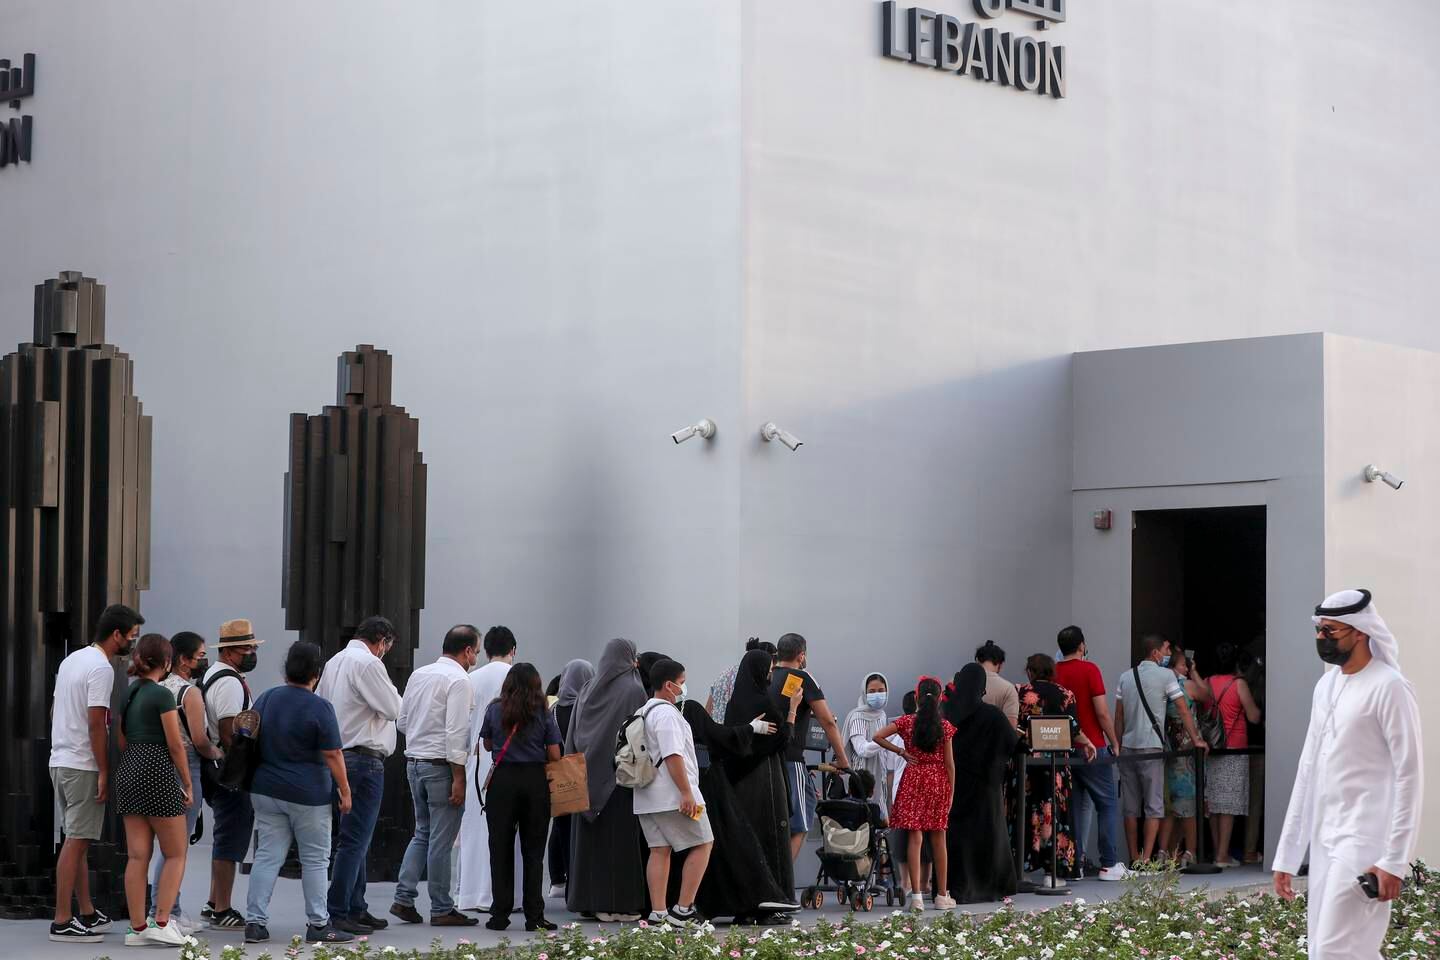 People wait to enter the Lebanon Pavilion at Expo 2020 Dubai. Khushnum Bhandari/ The National
